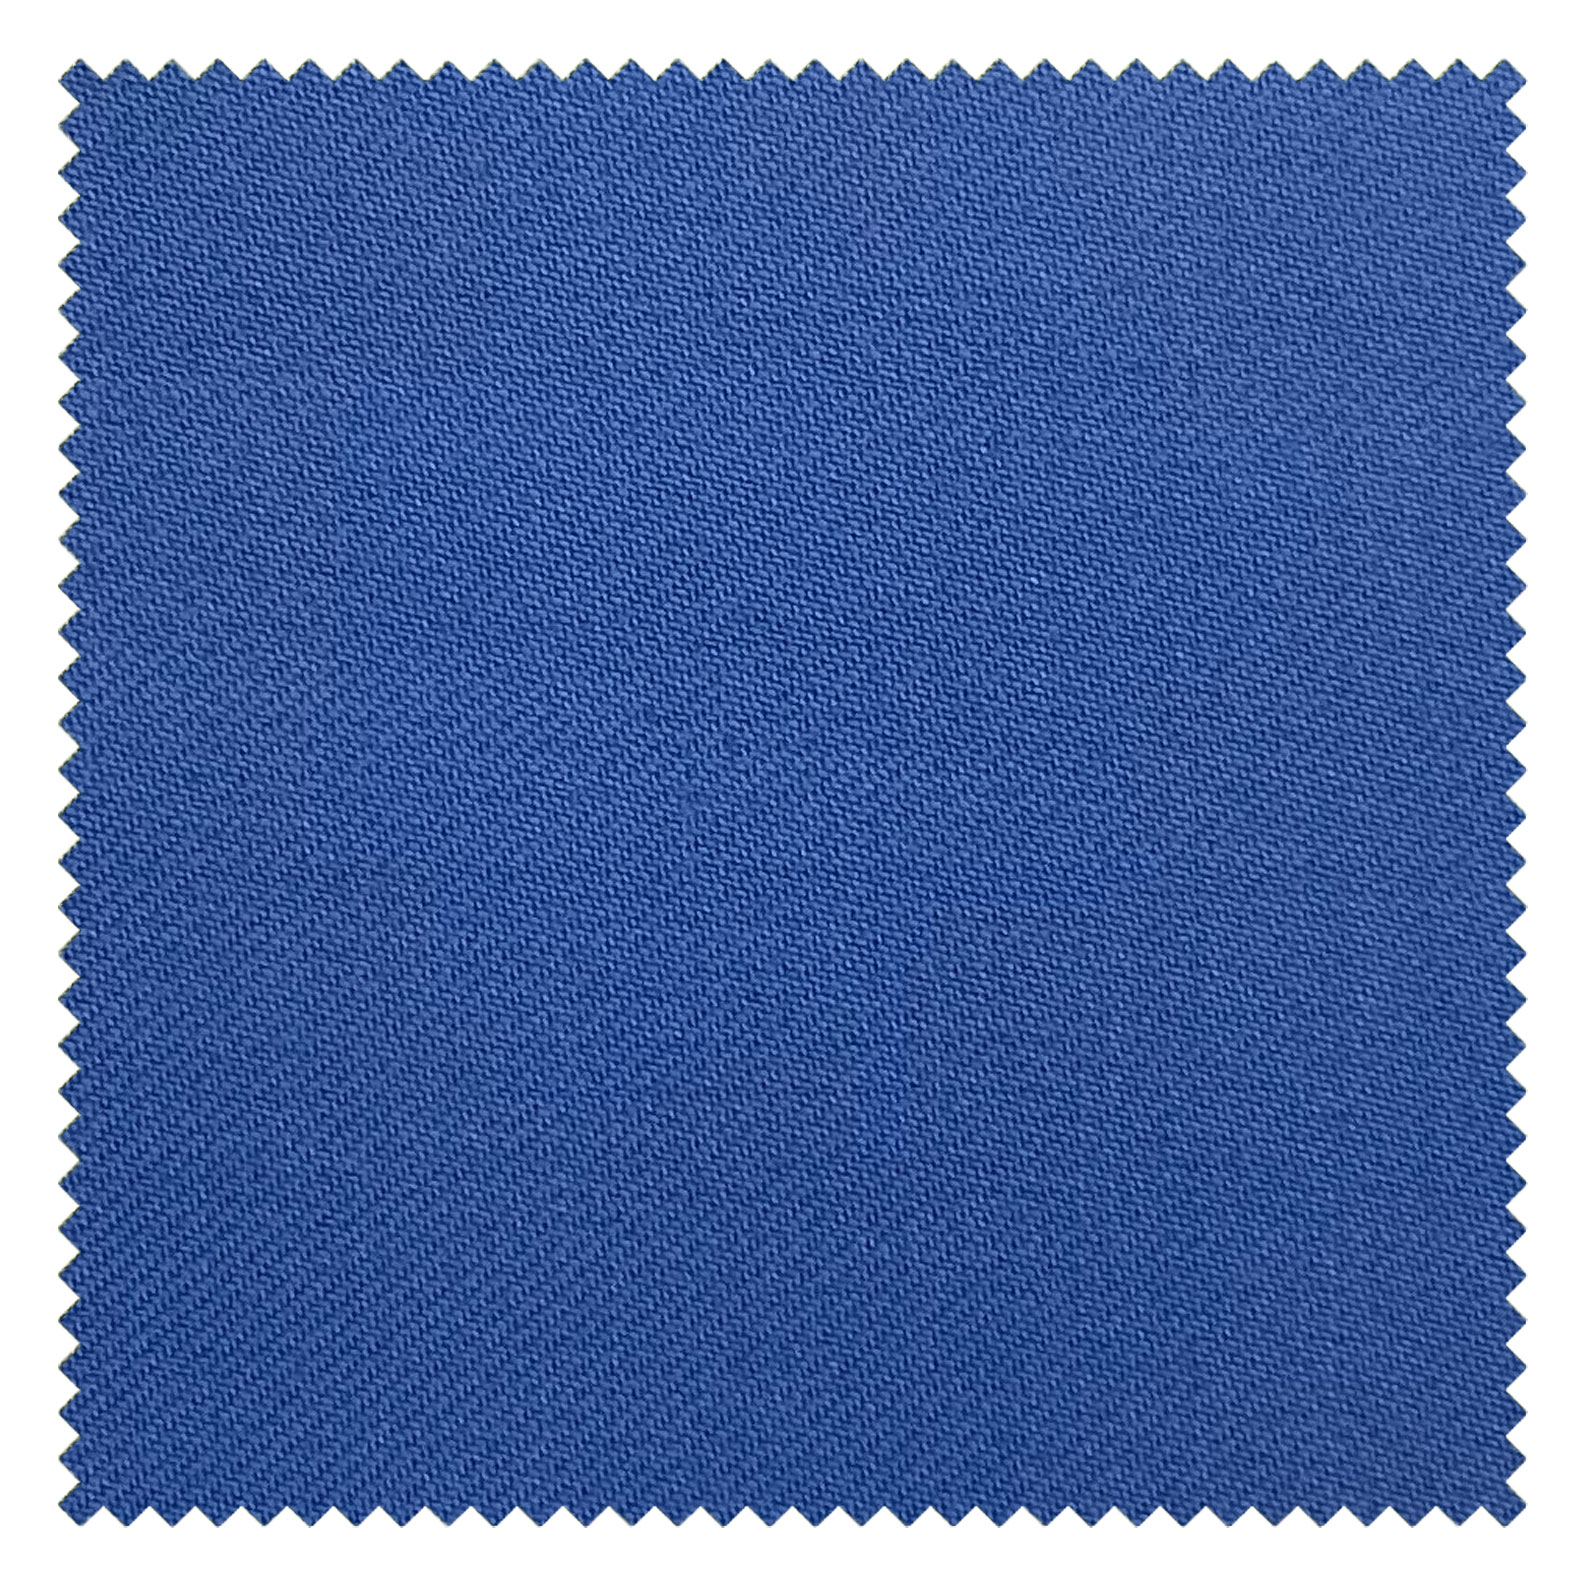 KINGMAN Cashmere Wool Fabric Royal Elegant BLUE SKY ผ้าตัดชุดสูท สีฟ้า กางเกง ผู้ชาย ผ้าตัดเสื้อ ยูนิฟอร์ม ผ้าวูล ผ้าคุณภาพดี กว้าง 60 นิ้ว ยาว 1 เมตร